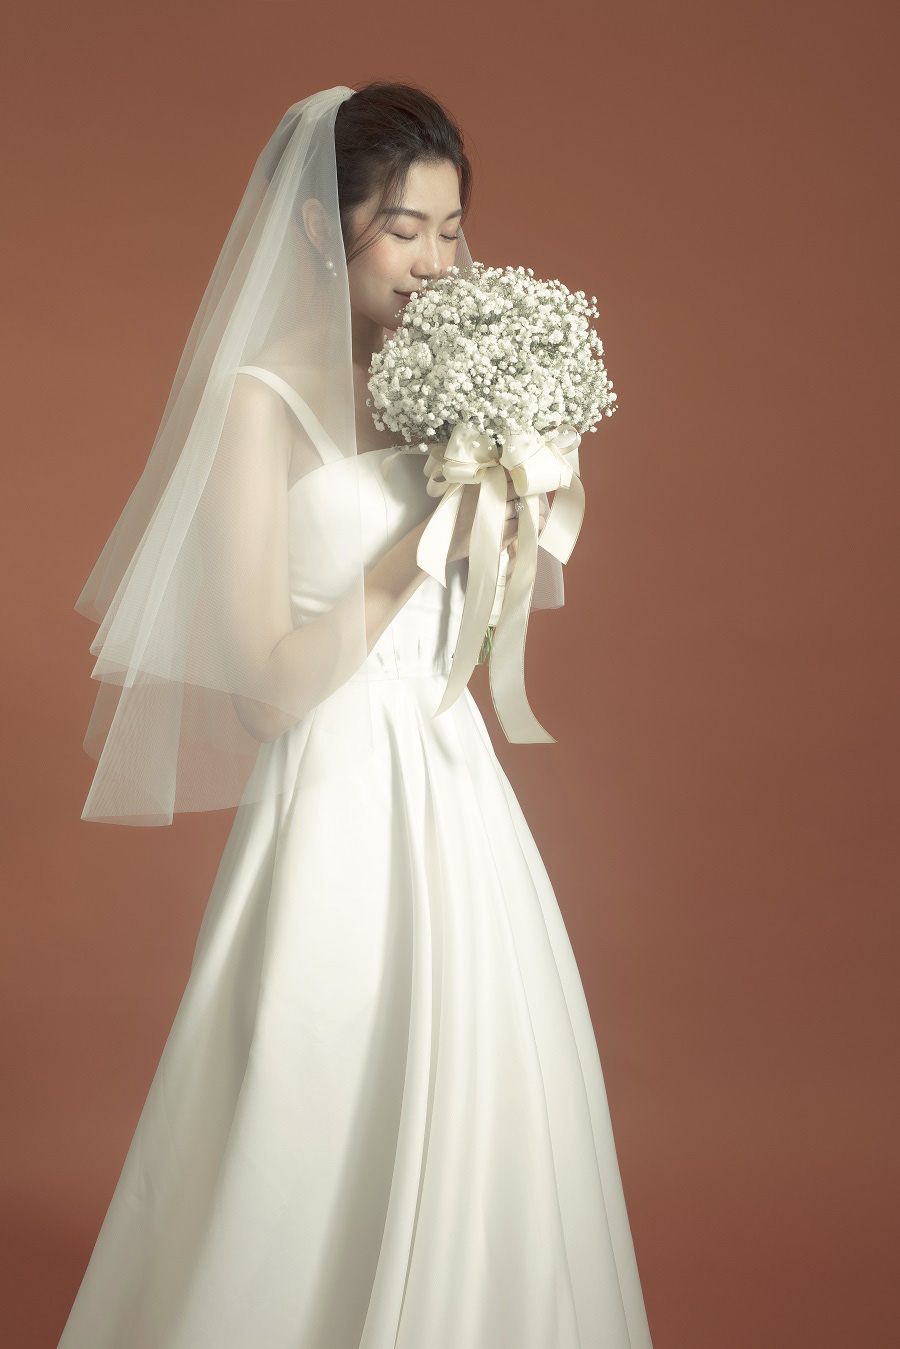 Á hậu Thúy Vân mặc váy cưới xinh đẹp như công chúa, dự định tổ chức tiệc cưới riêng tư trong 2 tháng tới - Ảnh 8.